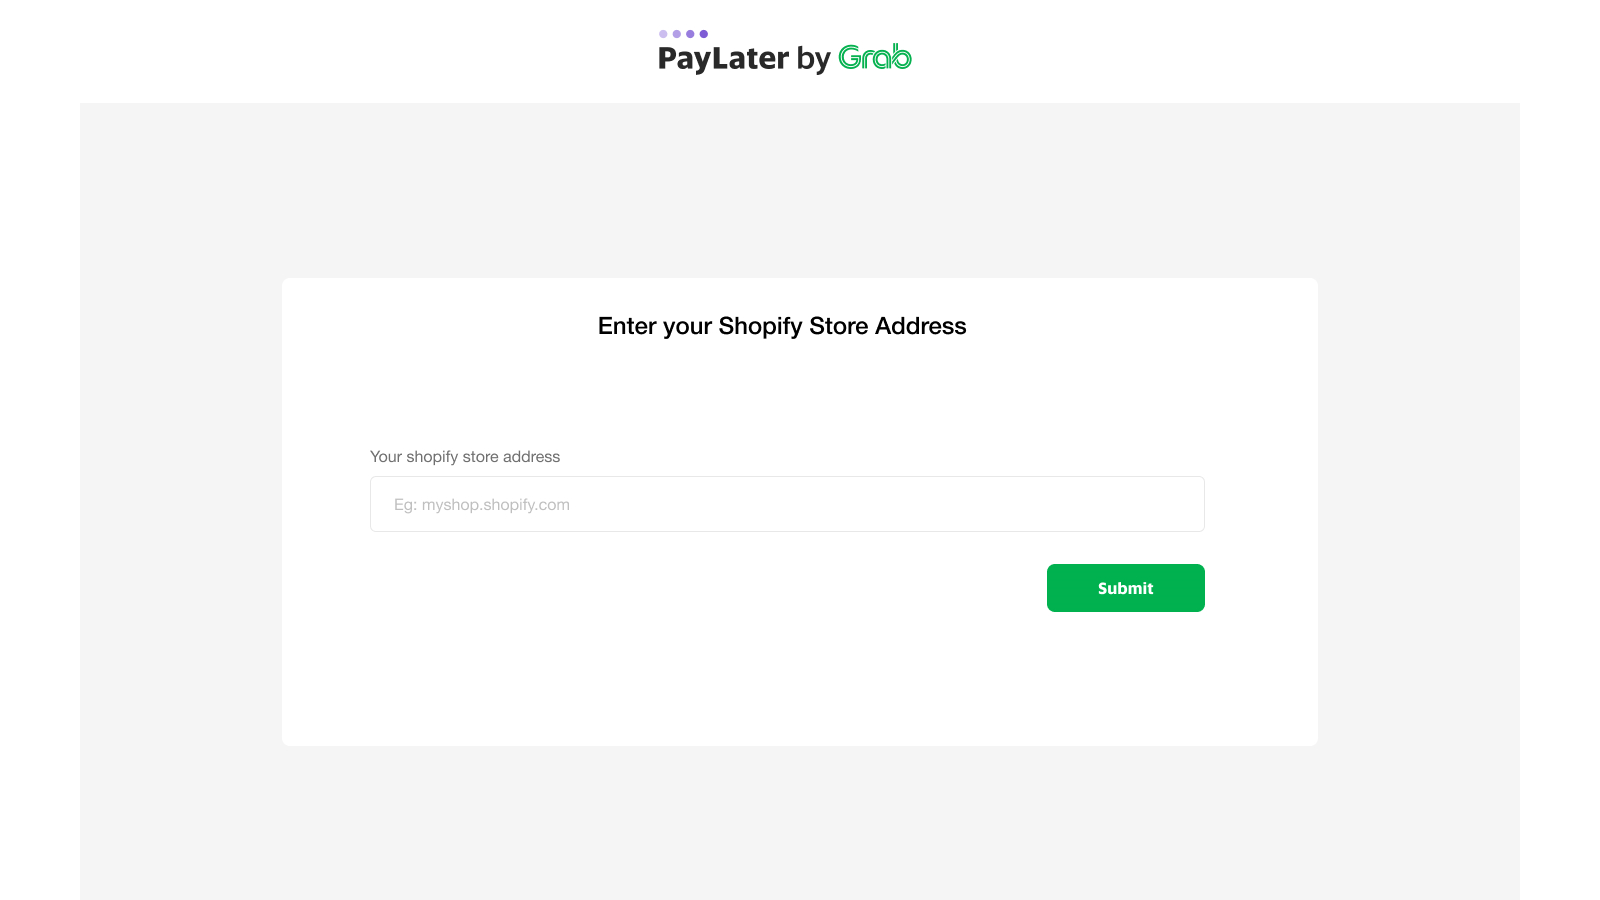 Step 2: Enter your Shopify Store URL (e.g. myshop.shopify.com)